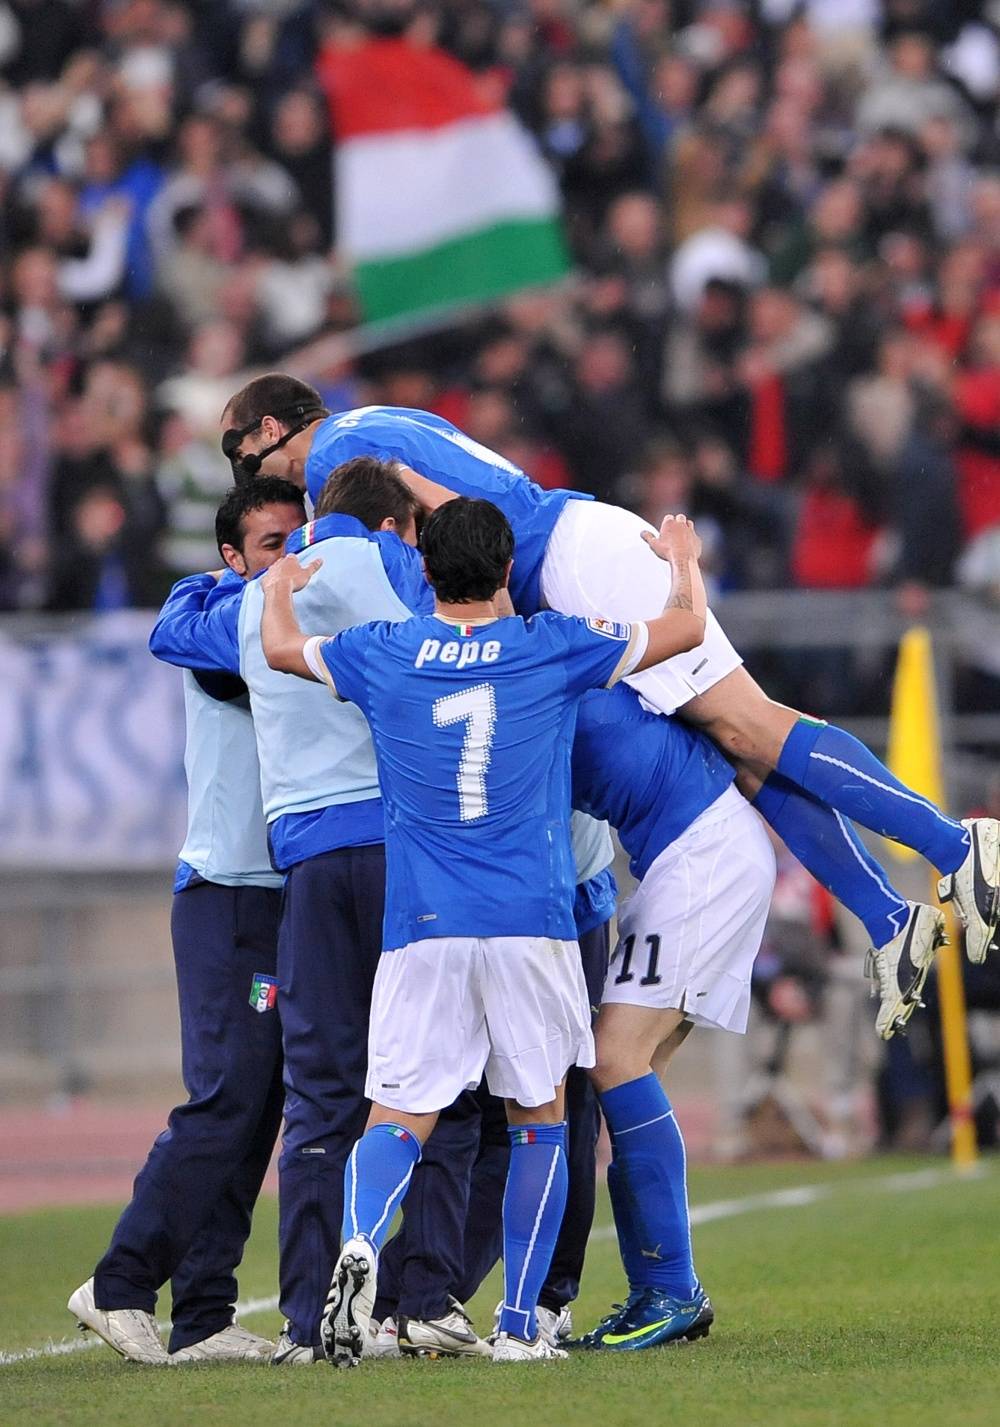 Italia e Irlanda 1 a 1 
Finisce in parità il derby 
fra Lippi e Trapattoni